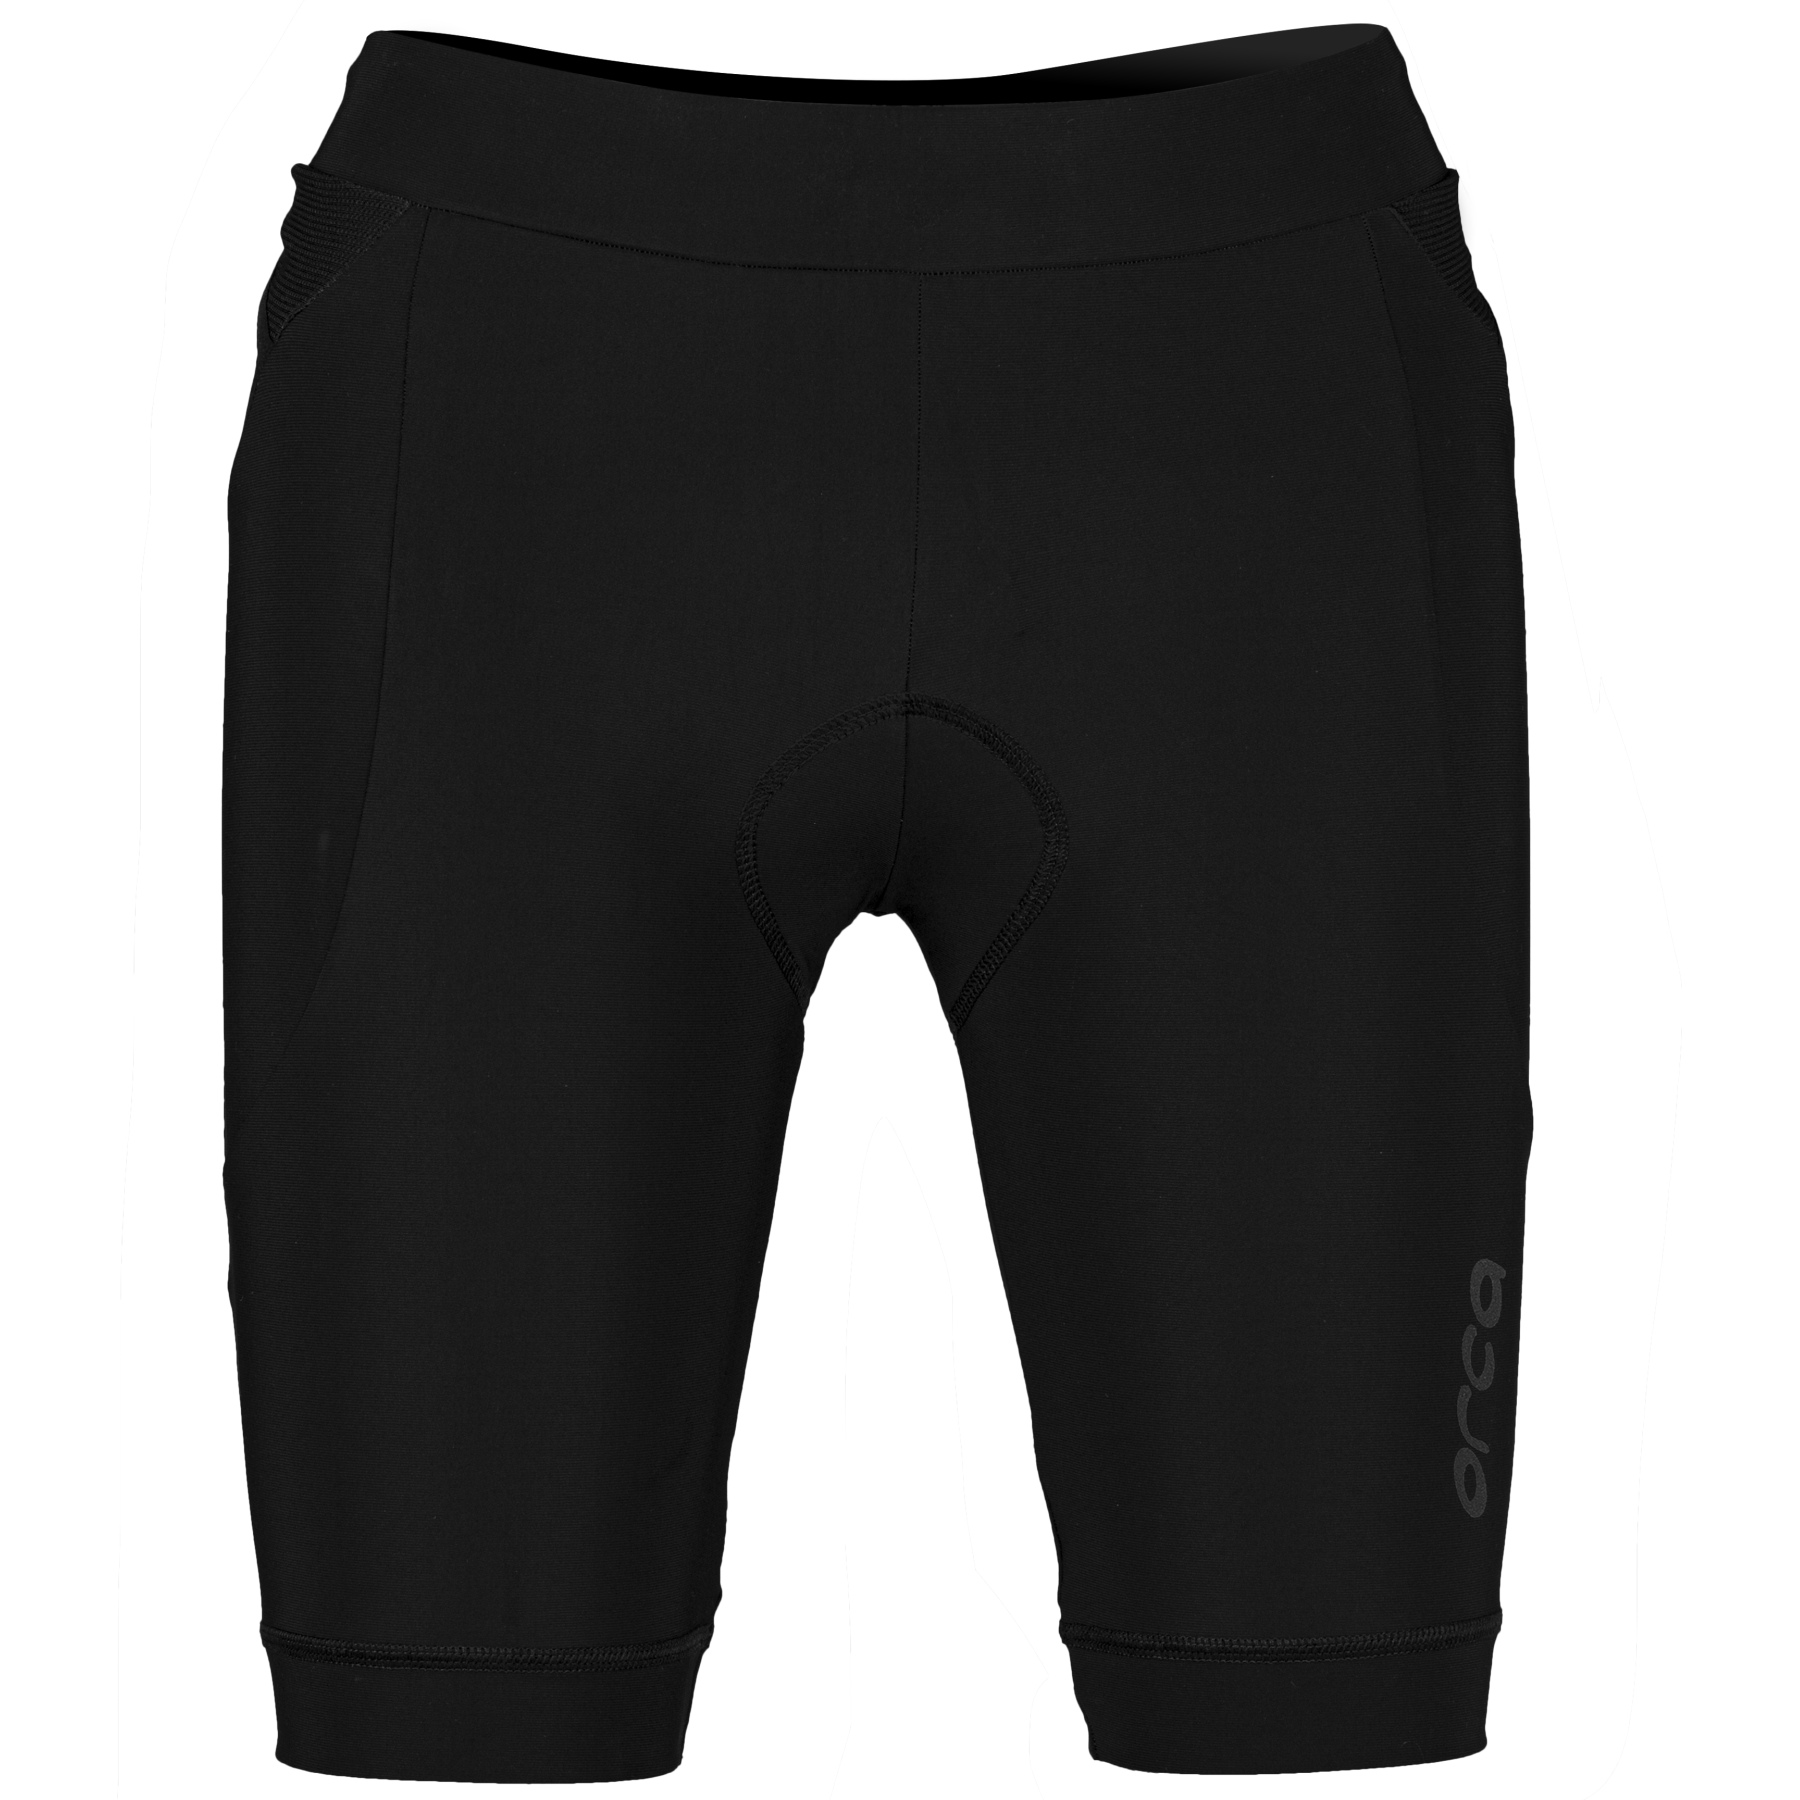 Produktbild von Orca Athlex Tri Shorts Damen - schwarz